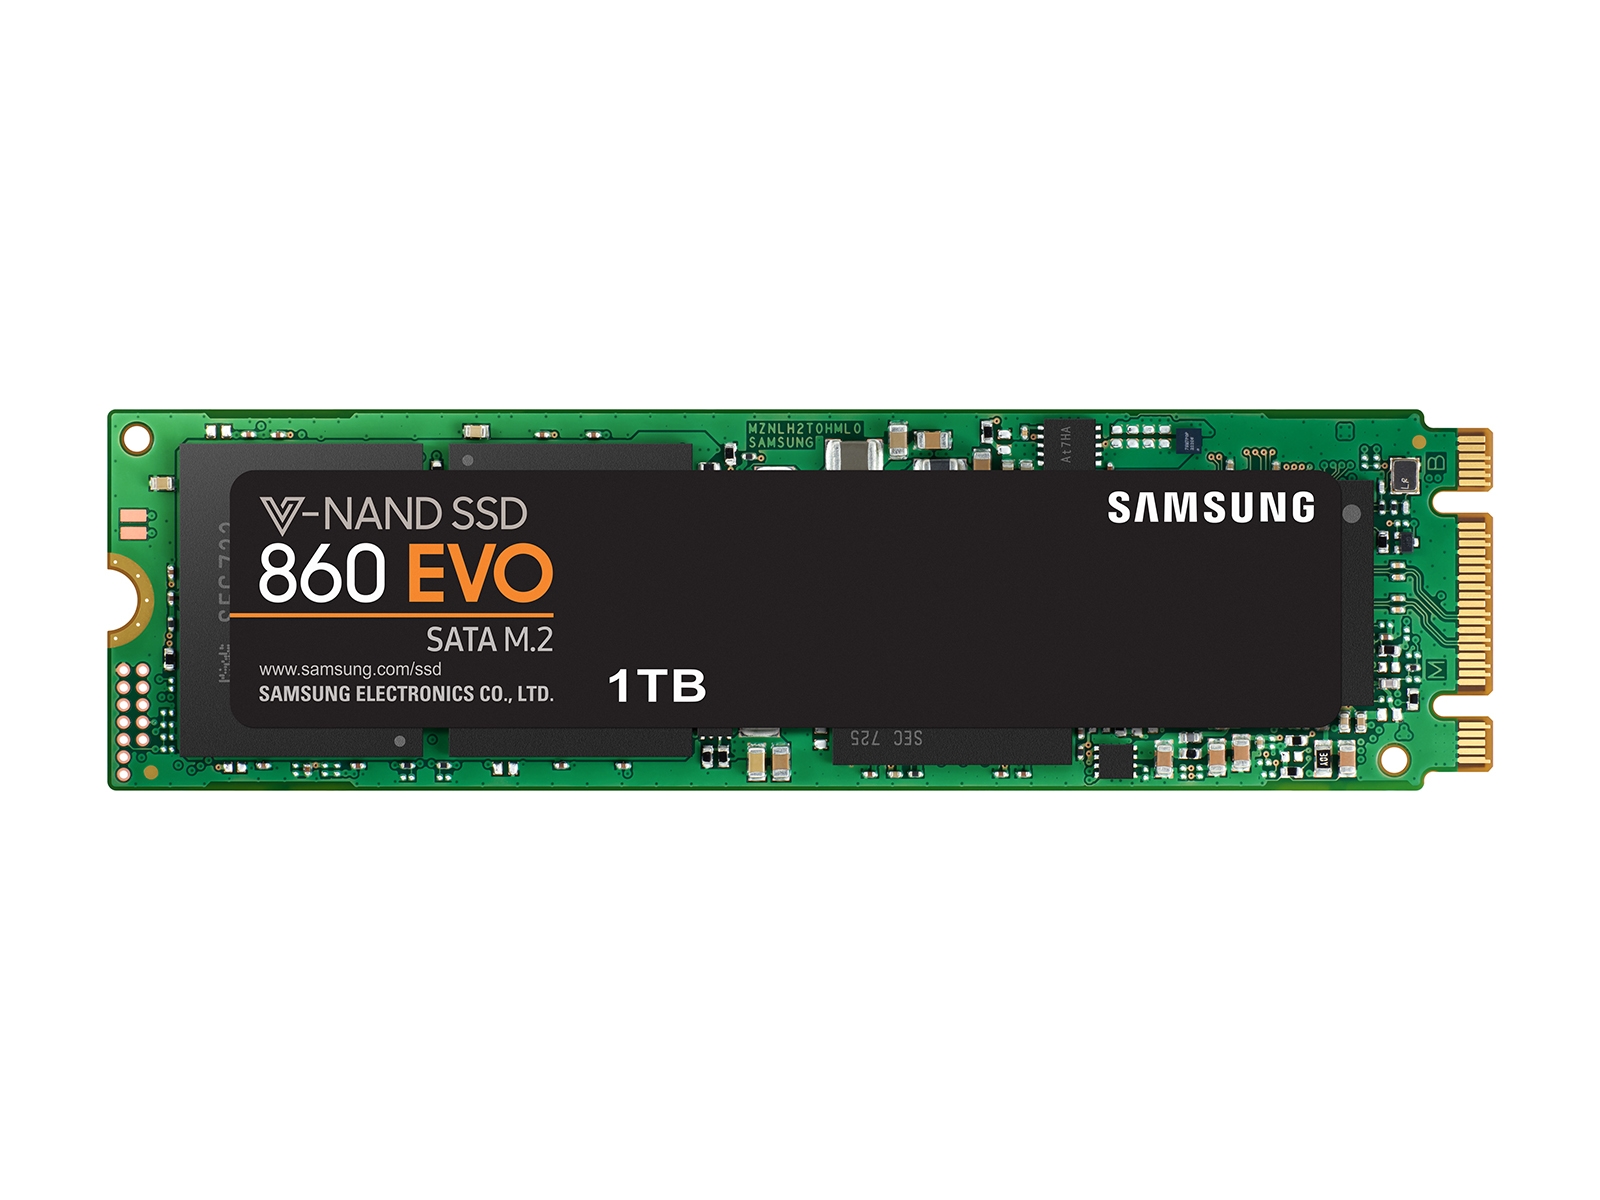 Herre venlig Brug af en computer Trives SSD 860 EVO M.2 SATA 1TB Memory & Storage - MZ-N6E1T0BW | Samsung US